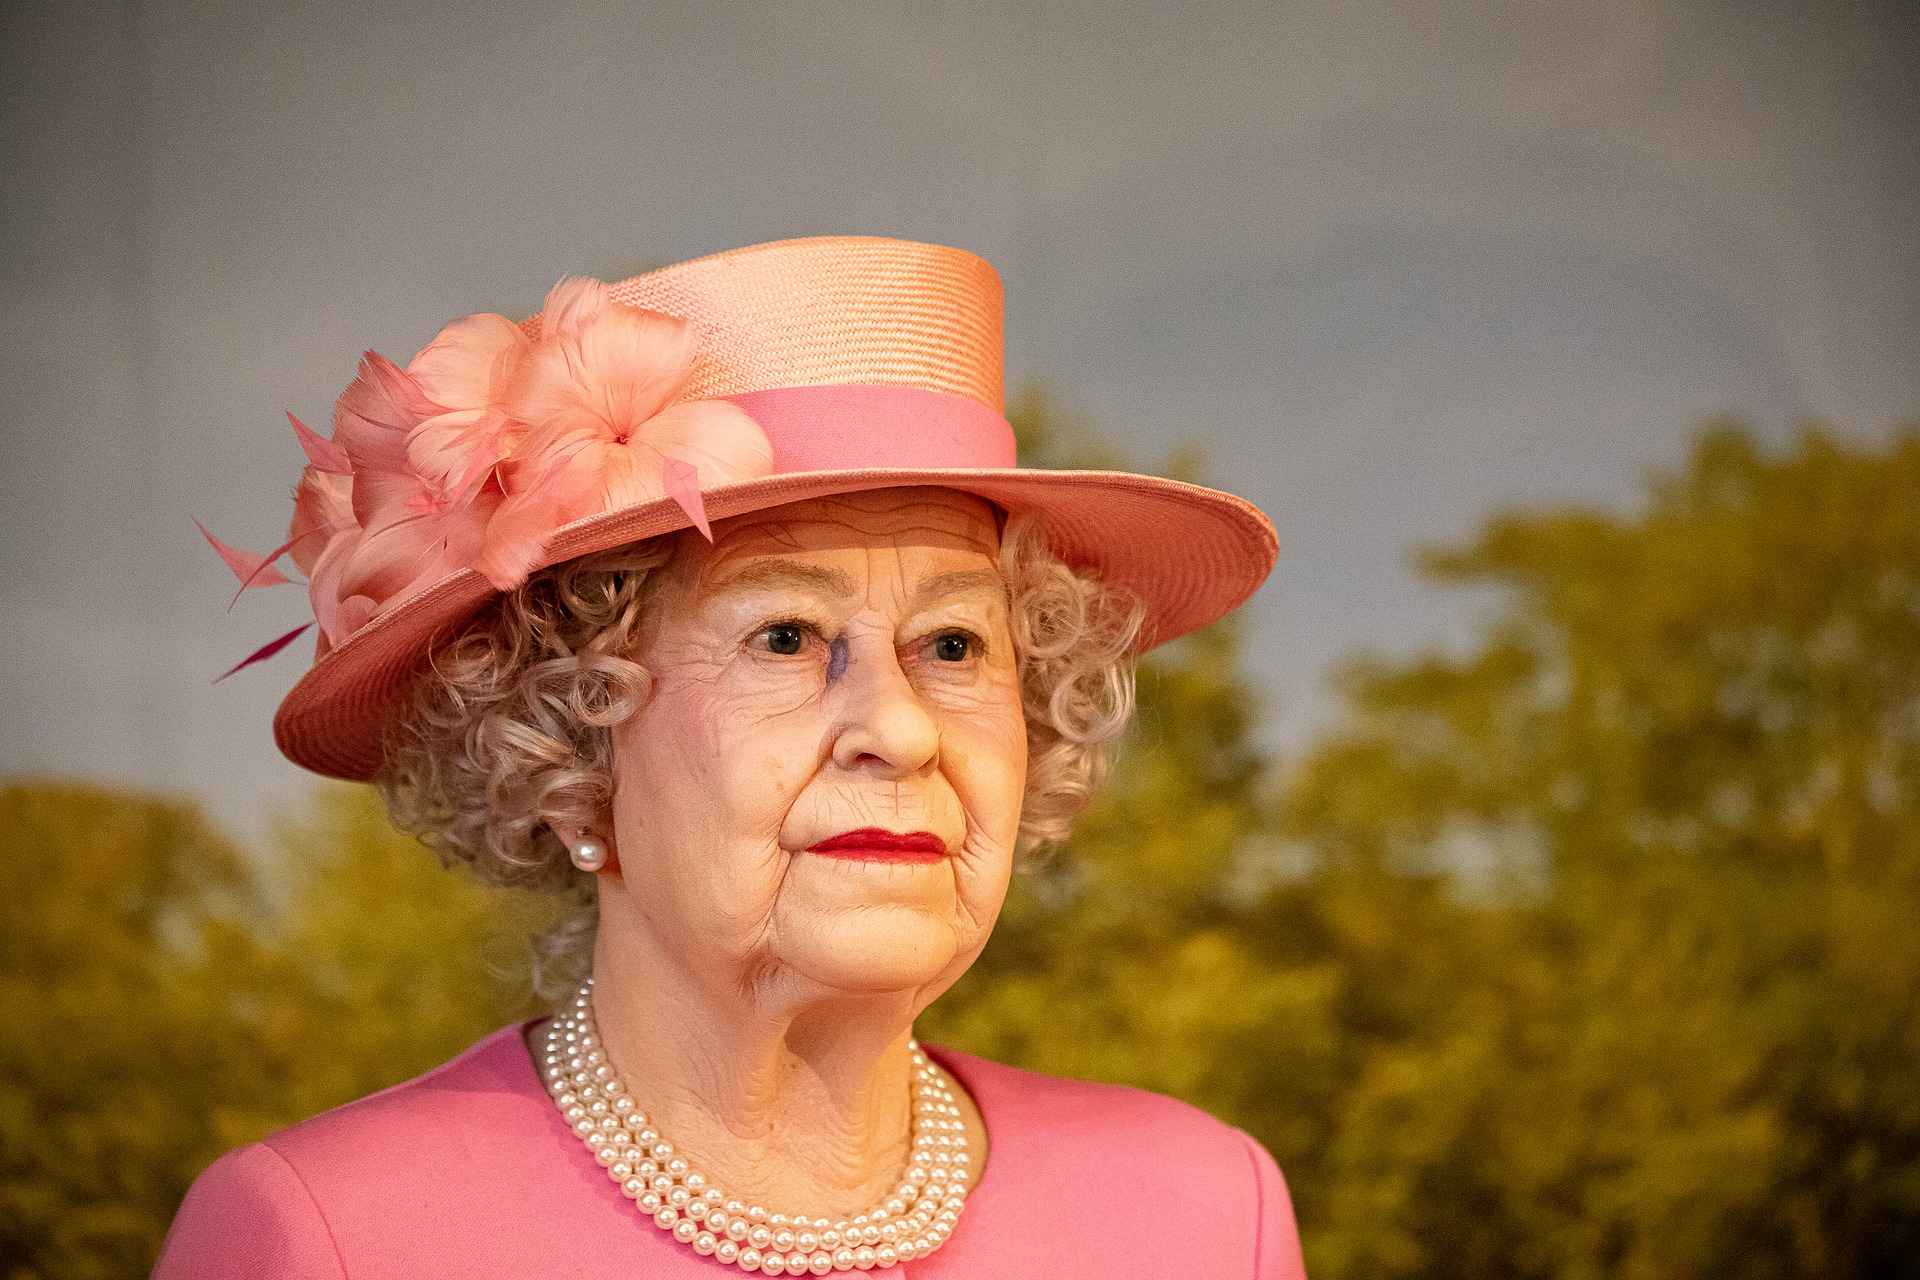 Em comemorao ao jubileu da rainha Elizabeth joias so expostas no Palcio de Buckingham